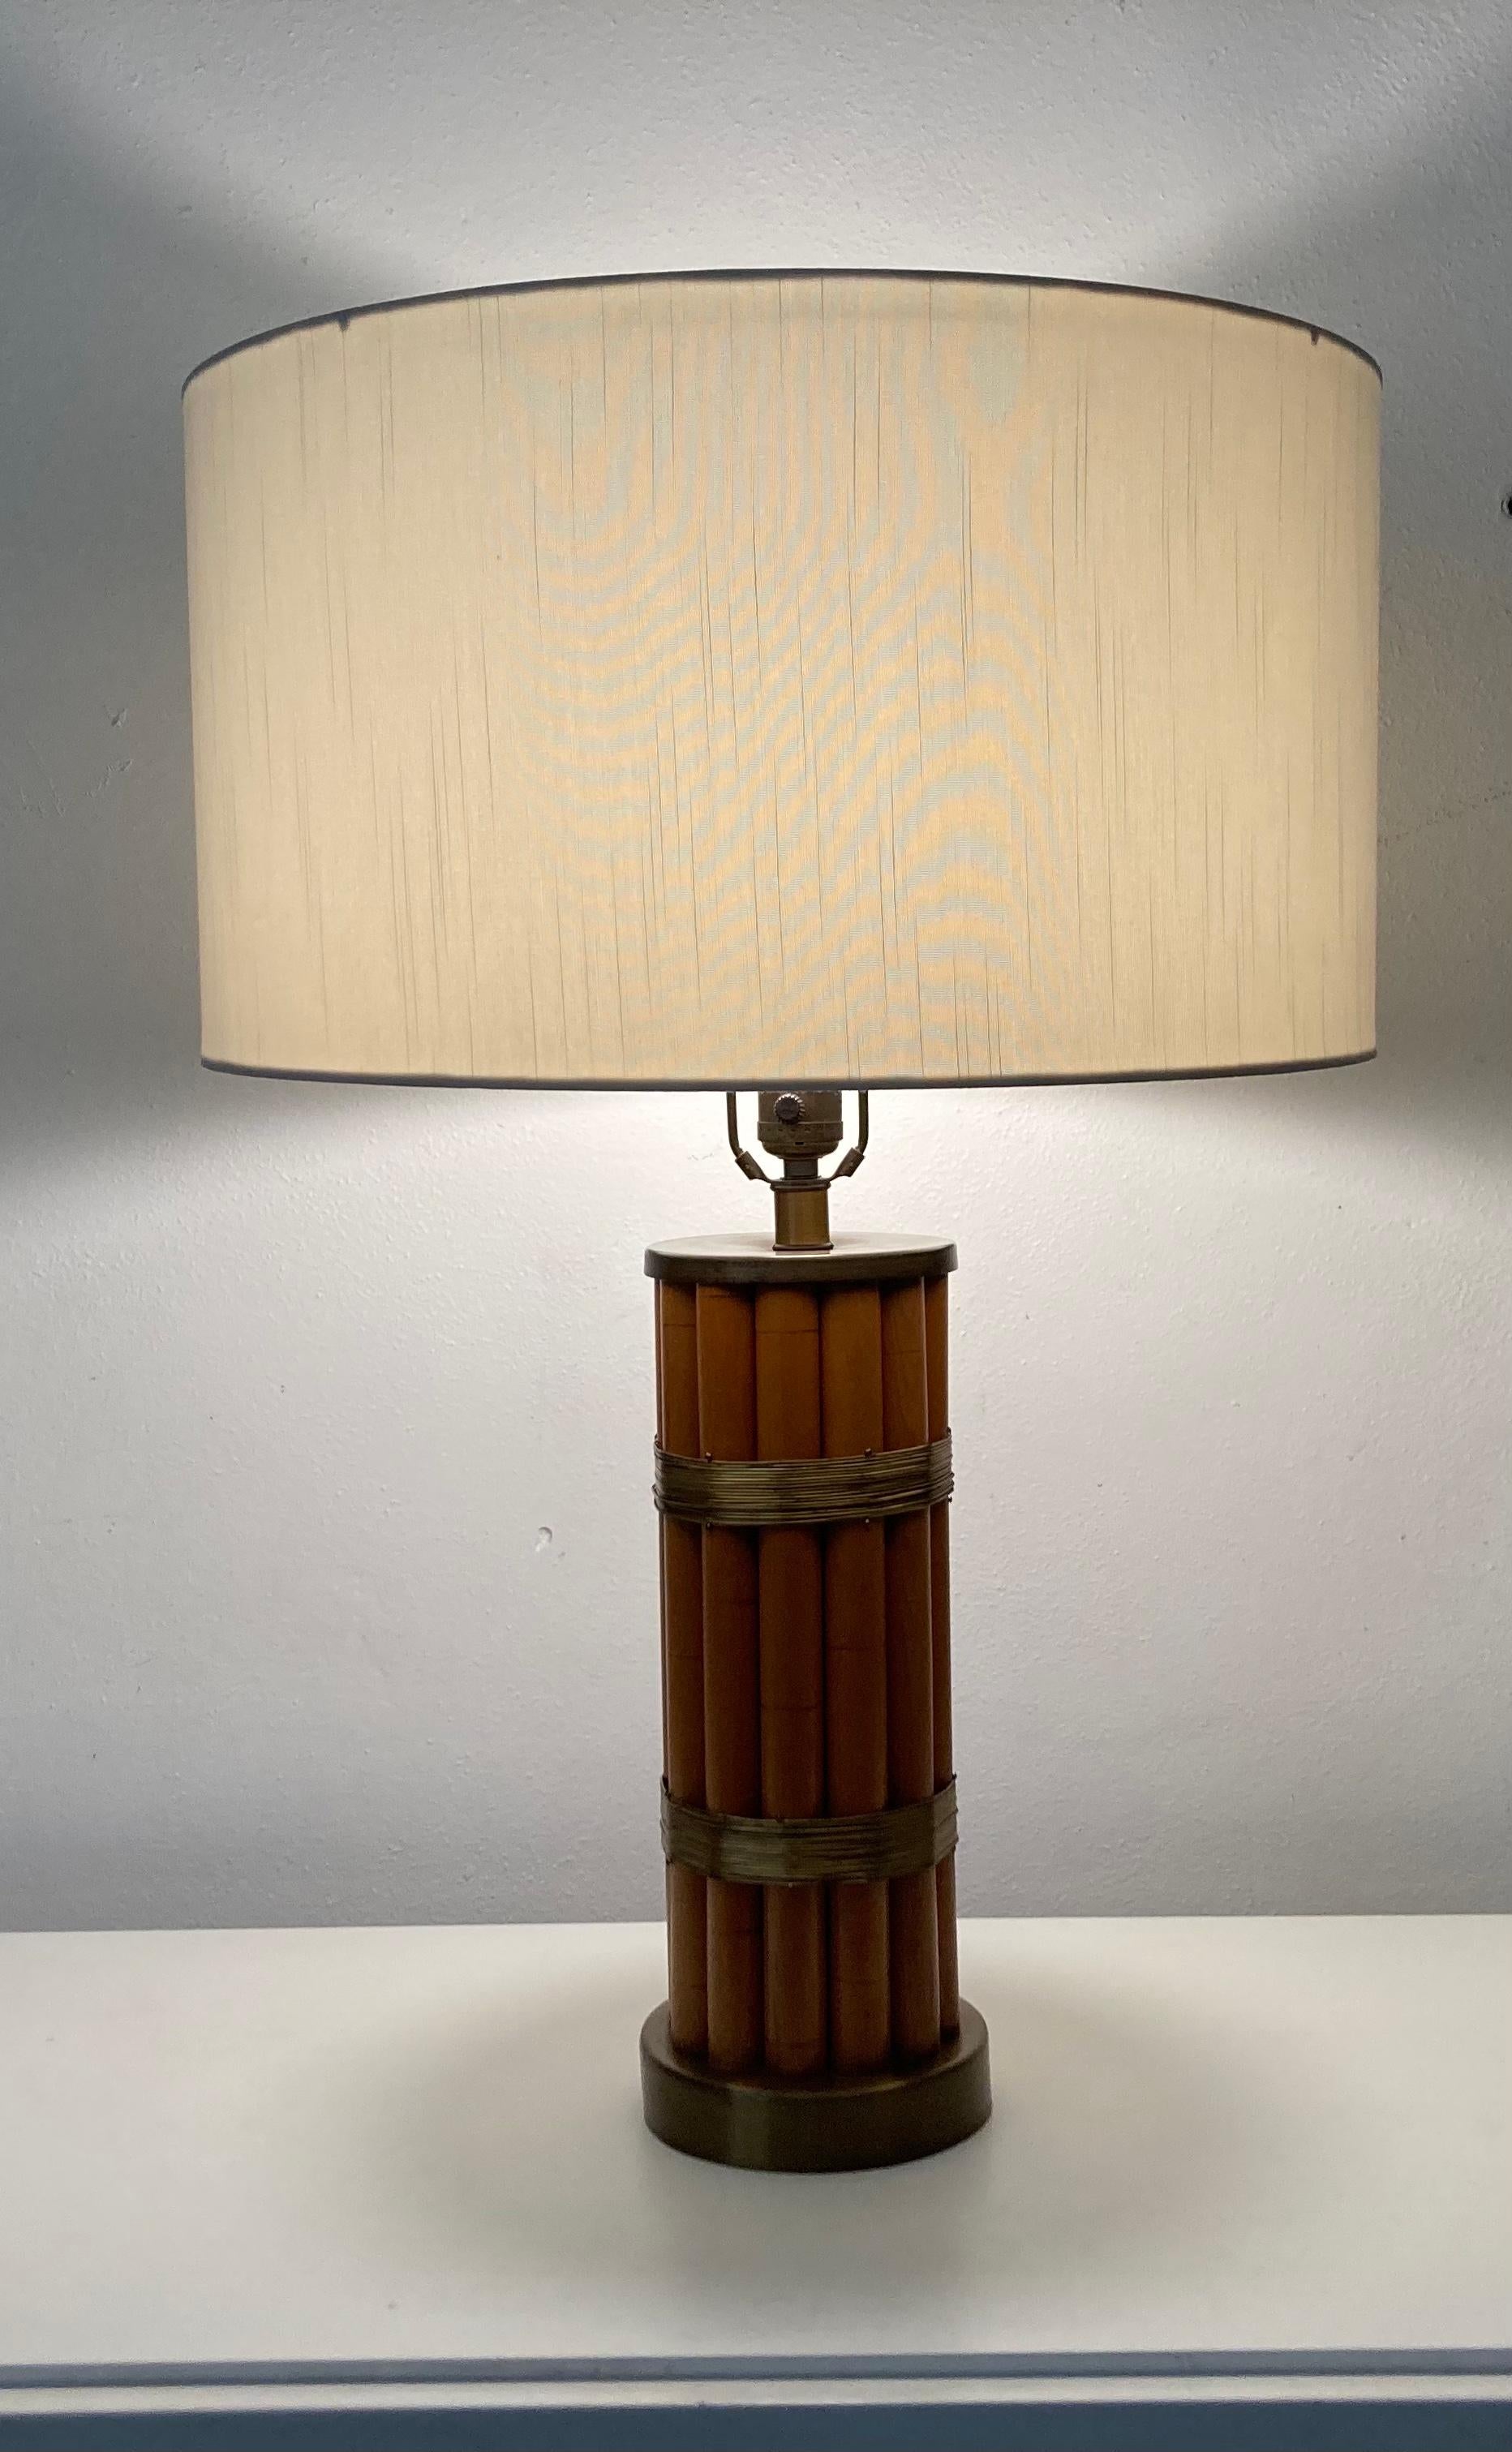 Paire de lampes de table originales Russel Wright, faux bambou et laiton. 
La lampe de table a un diamètre de 5,75 pouces. L'abat-jour a un diamètre de 18,25 pouces. 
Les abat-jour actuels ont quelques taches et seront remplacés par le vendeur.